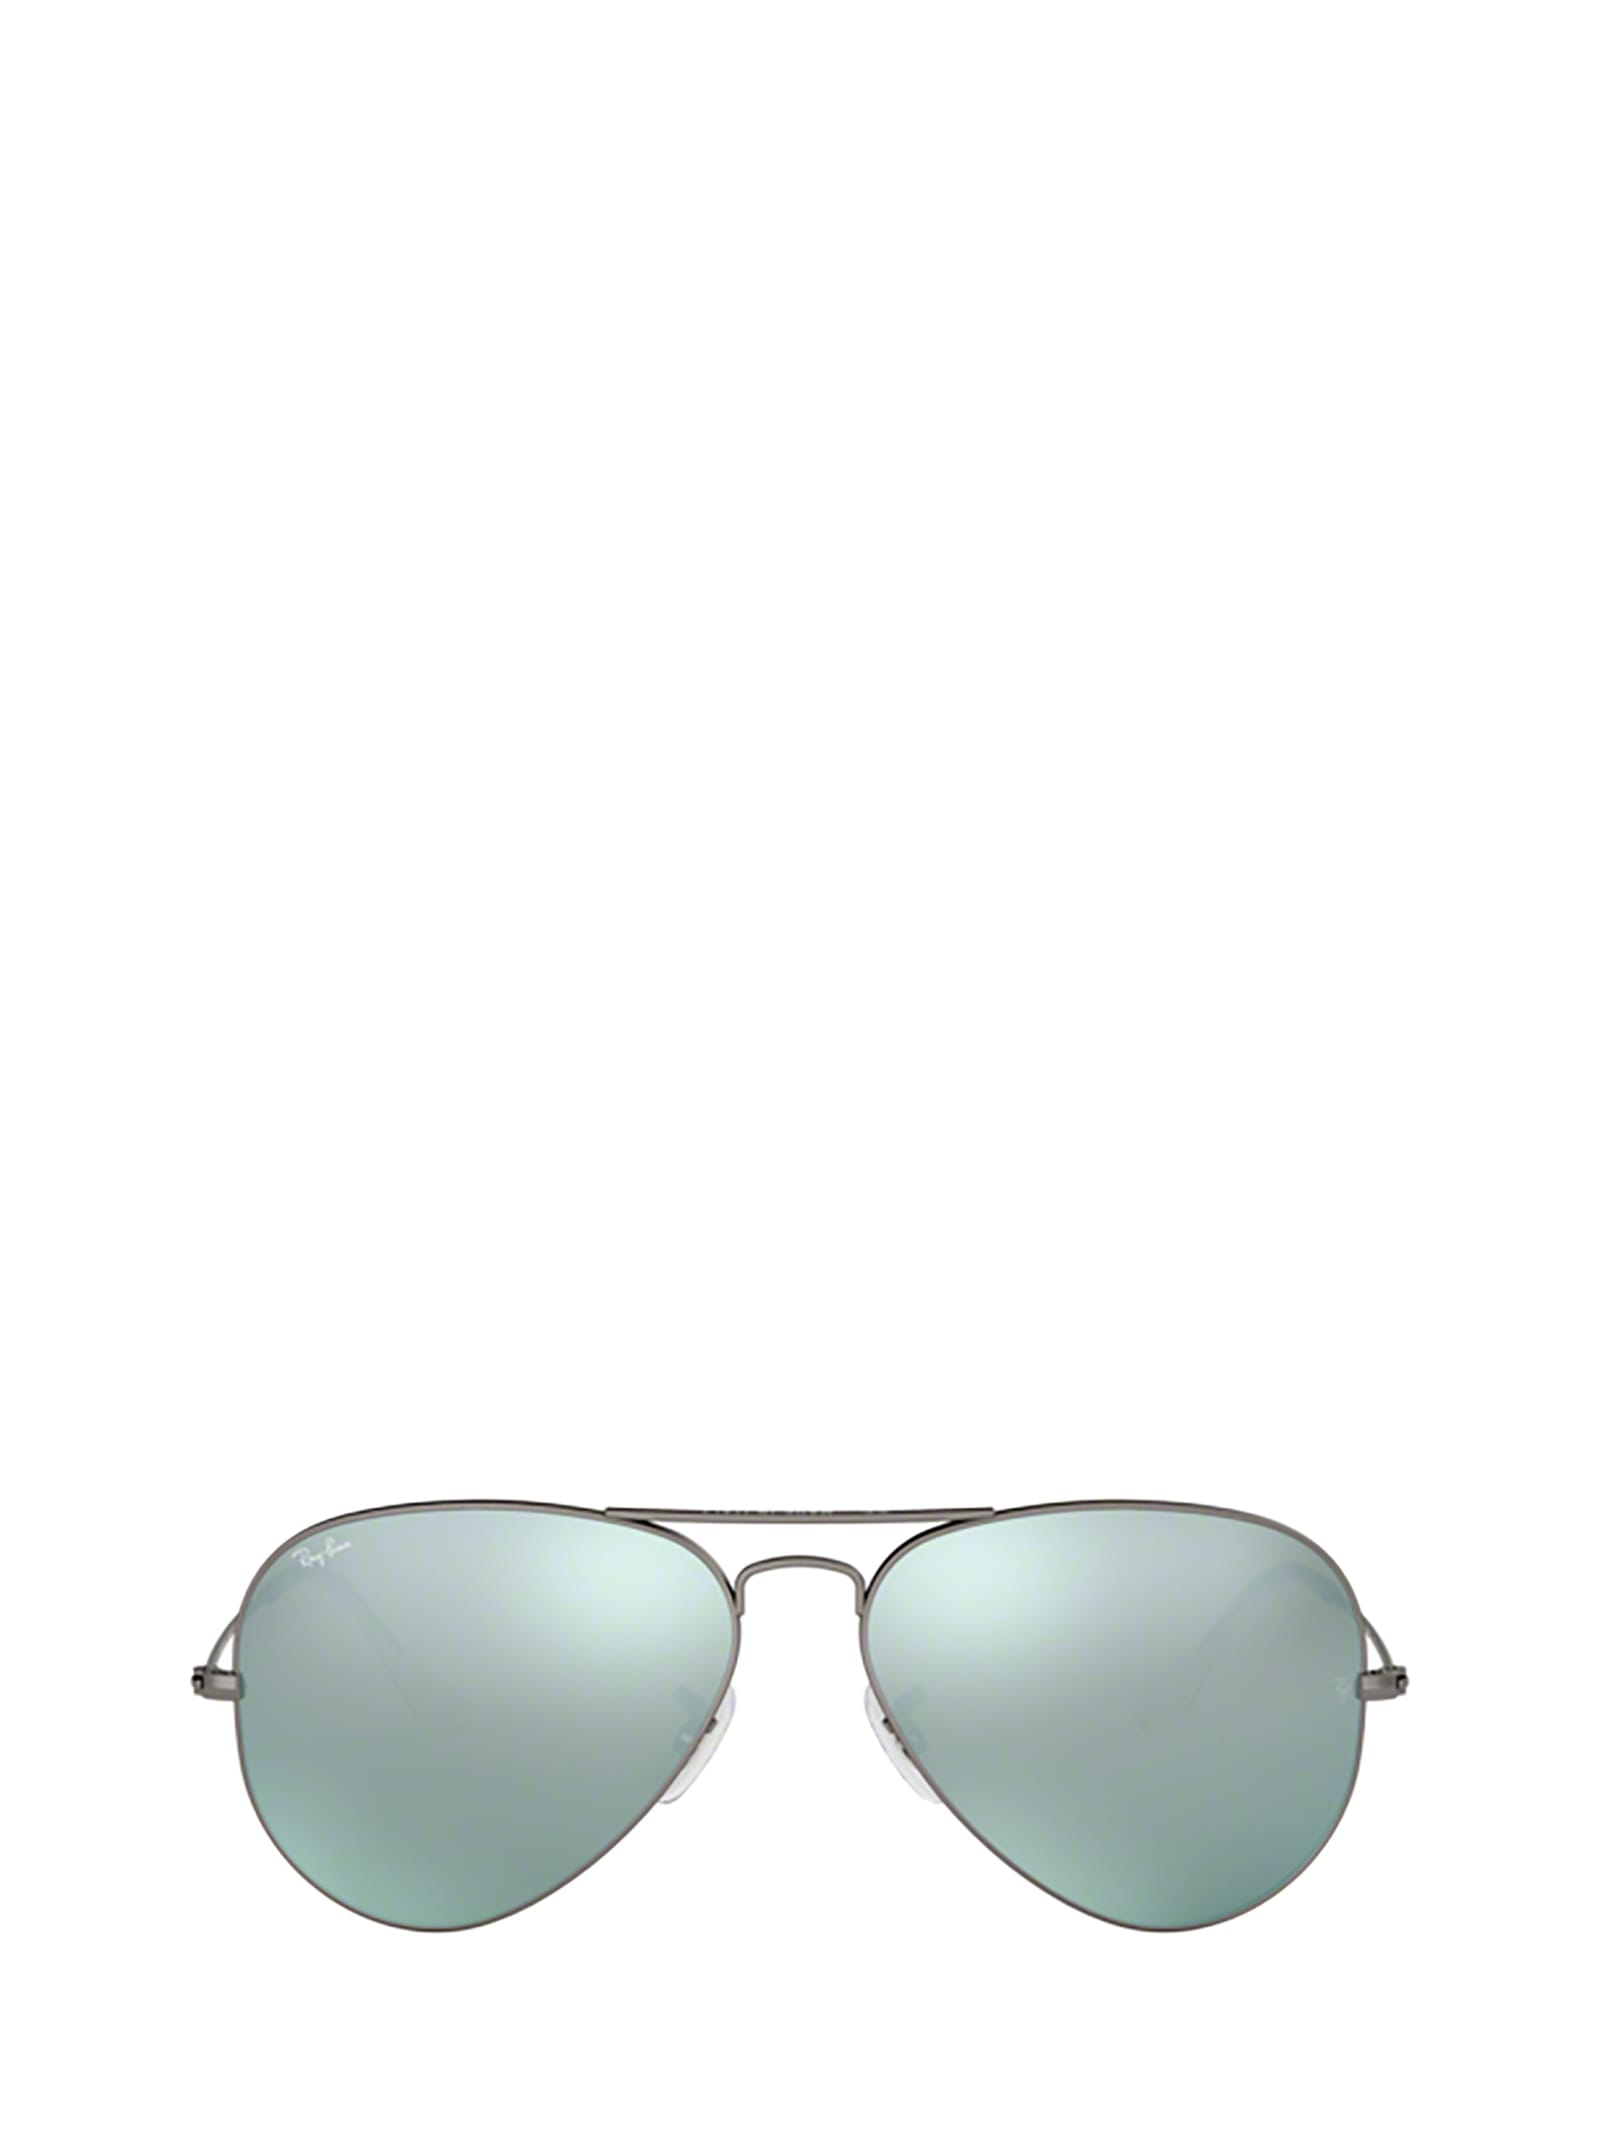 Ray-Ban Ray-ban Rb3025 Matte Gunmetal Sunglasses